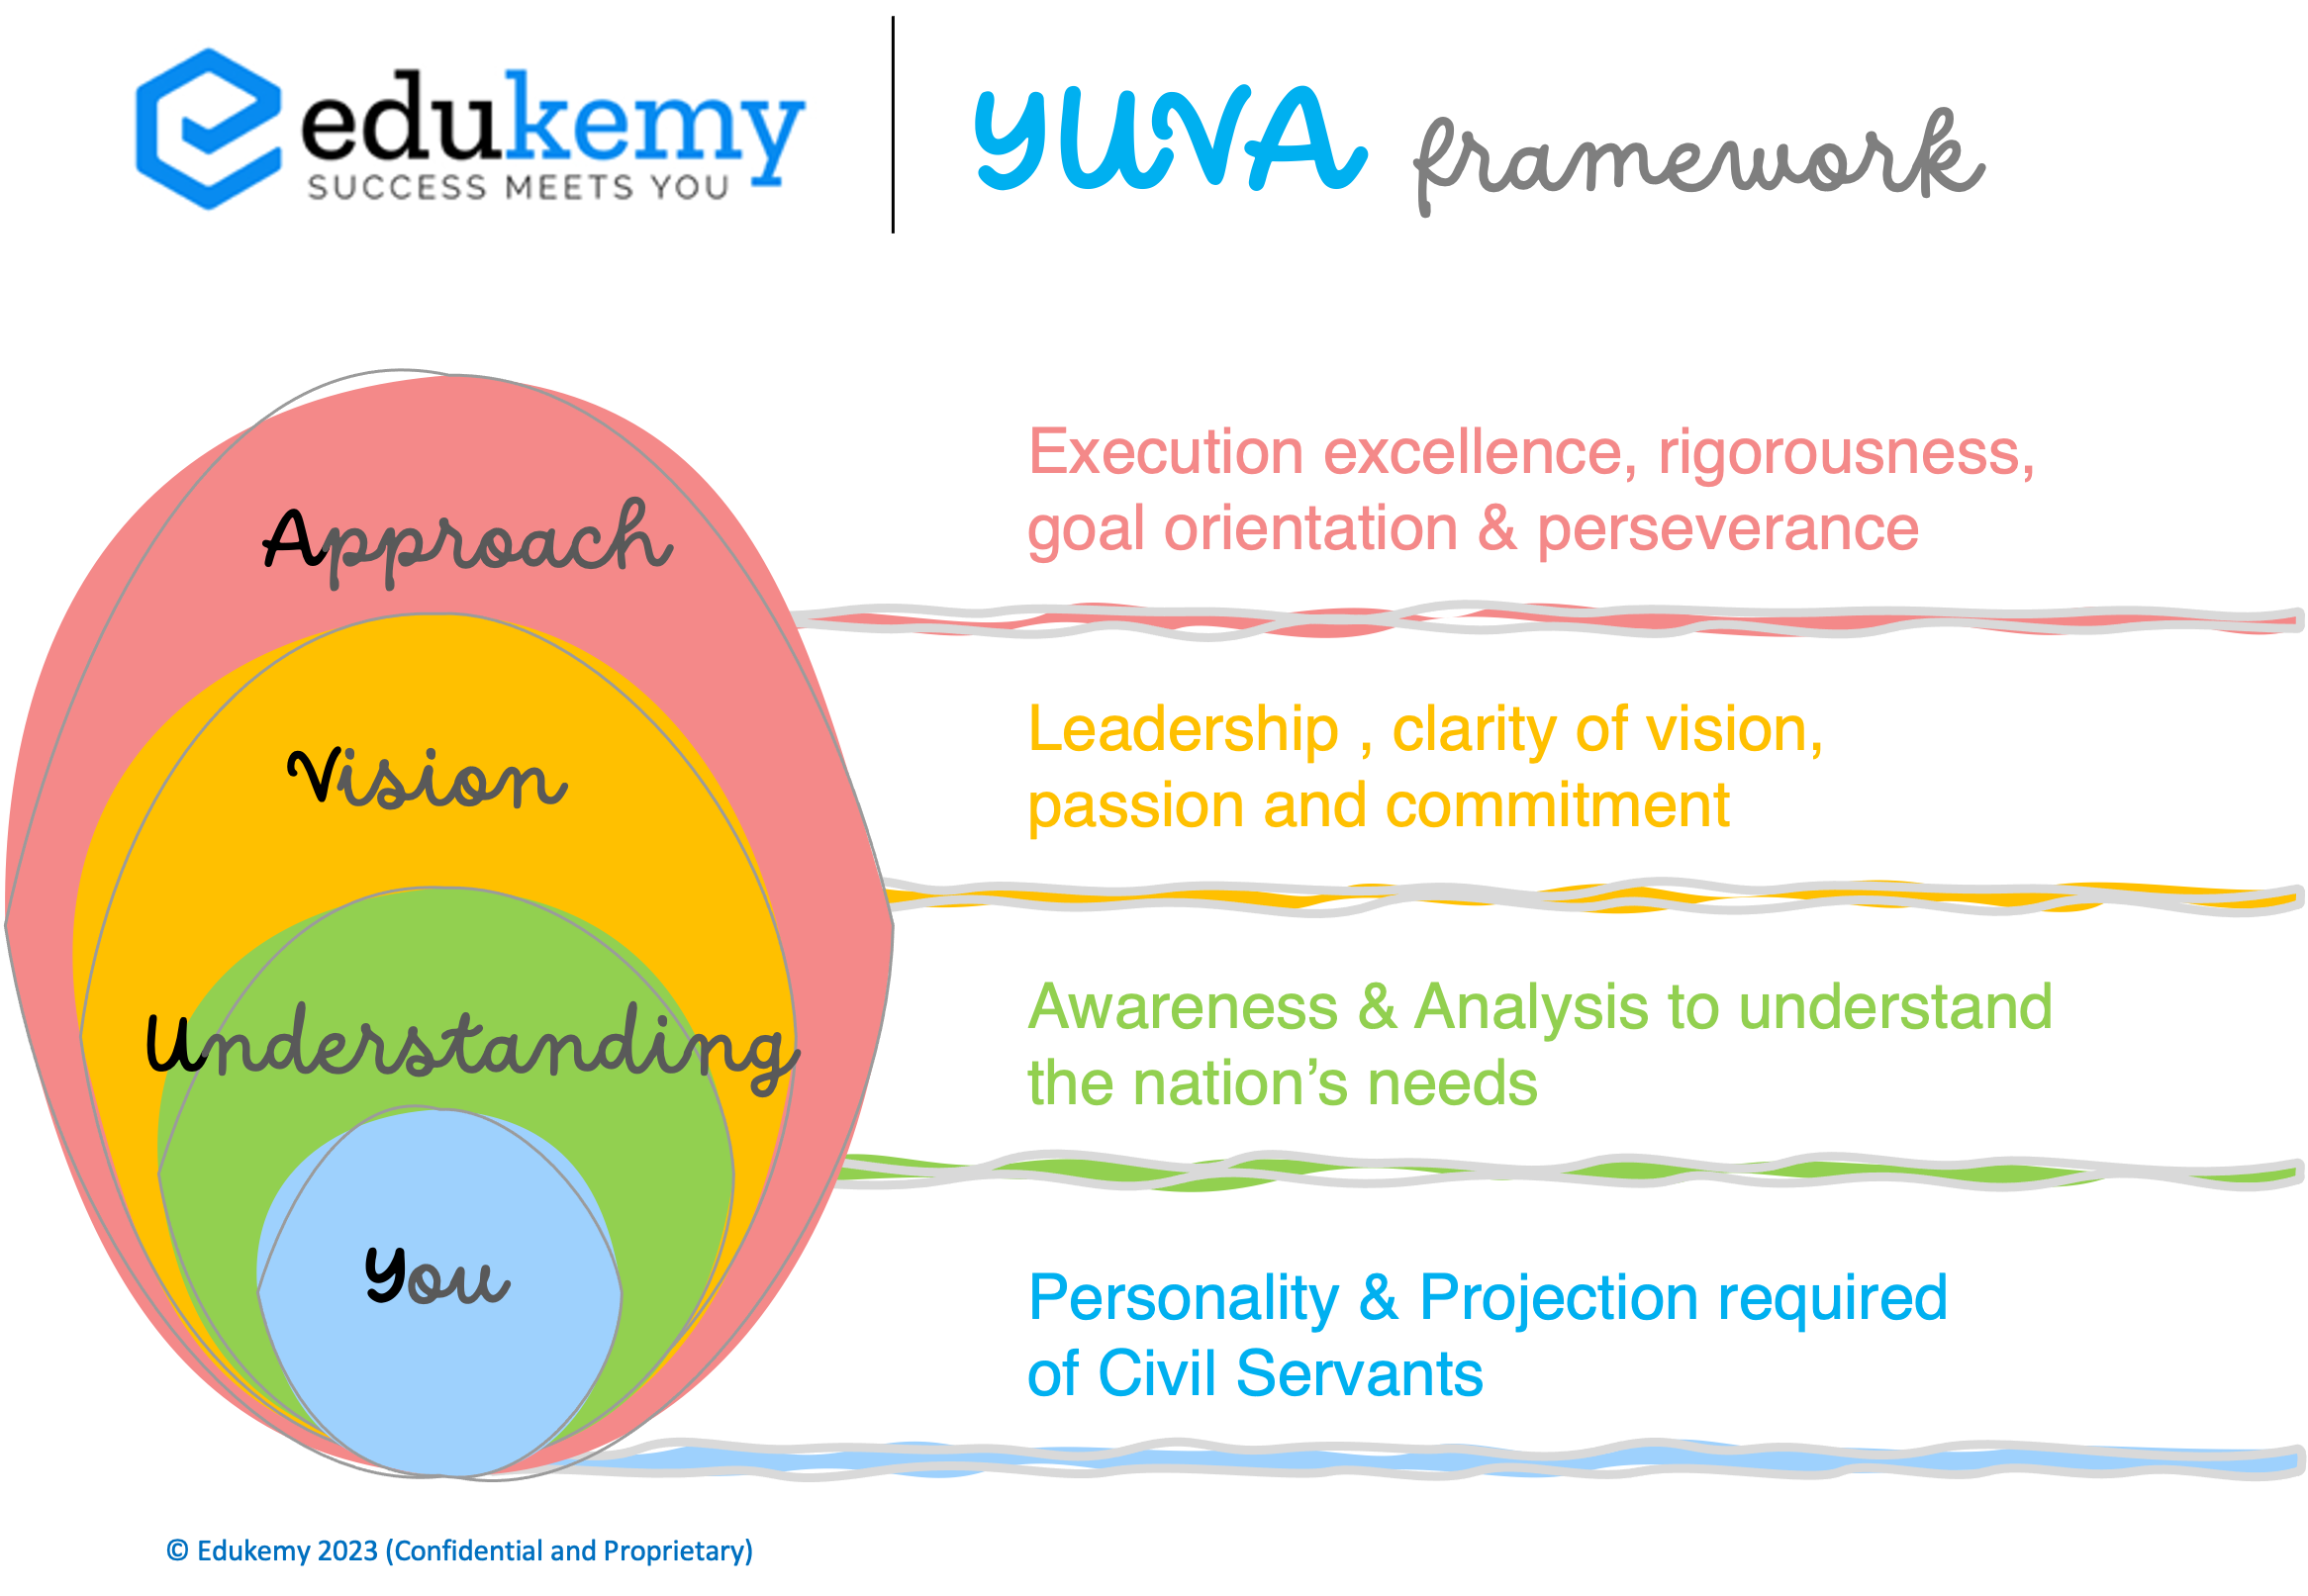 Edukemy YUVA framework for success in UPSC